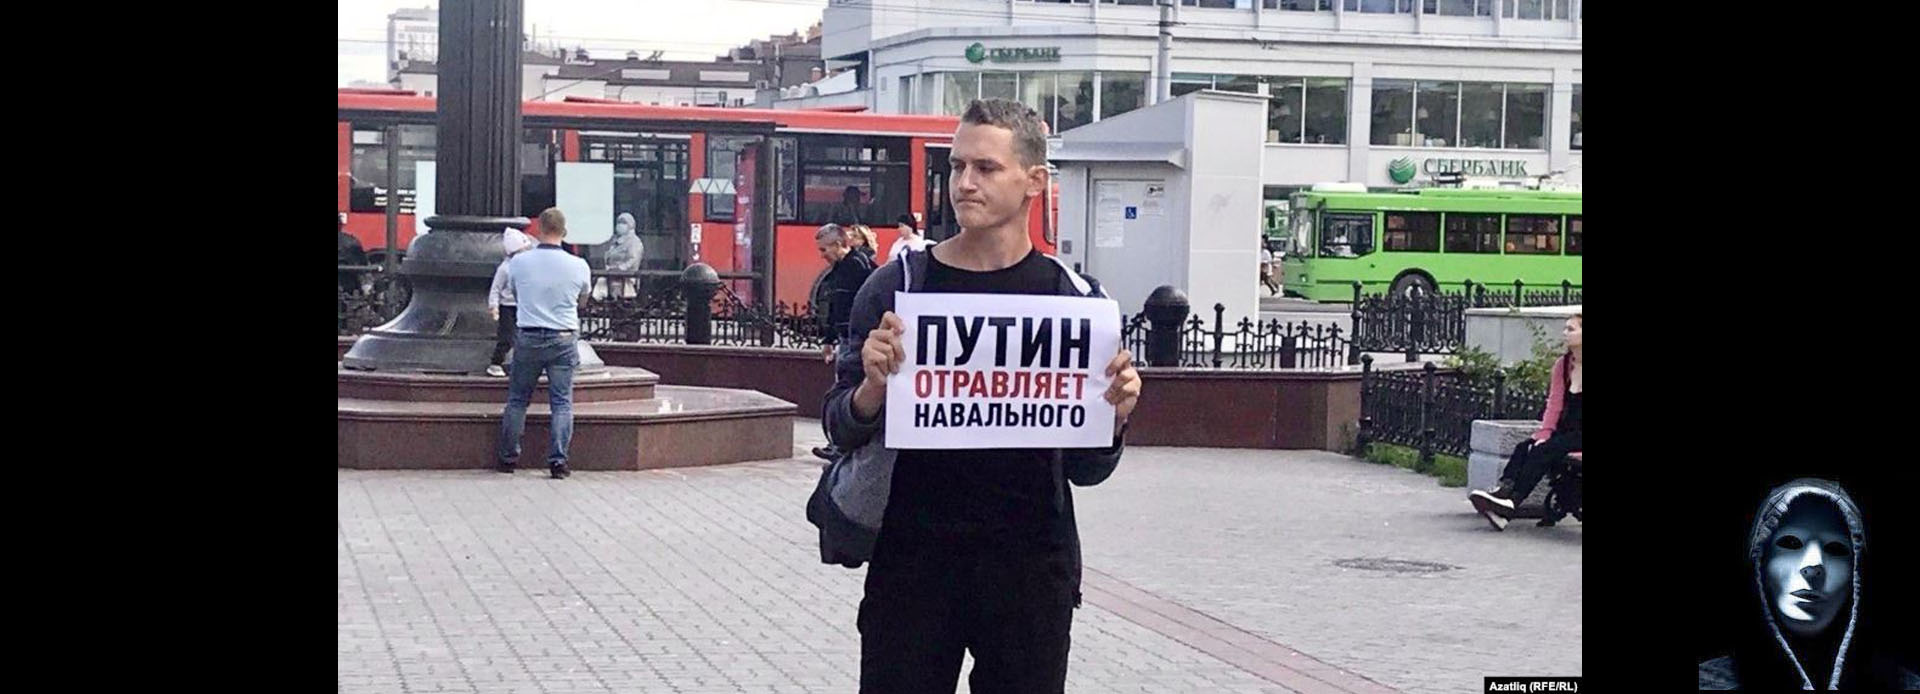 Путин травит Навального